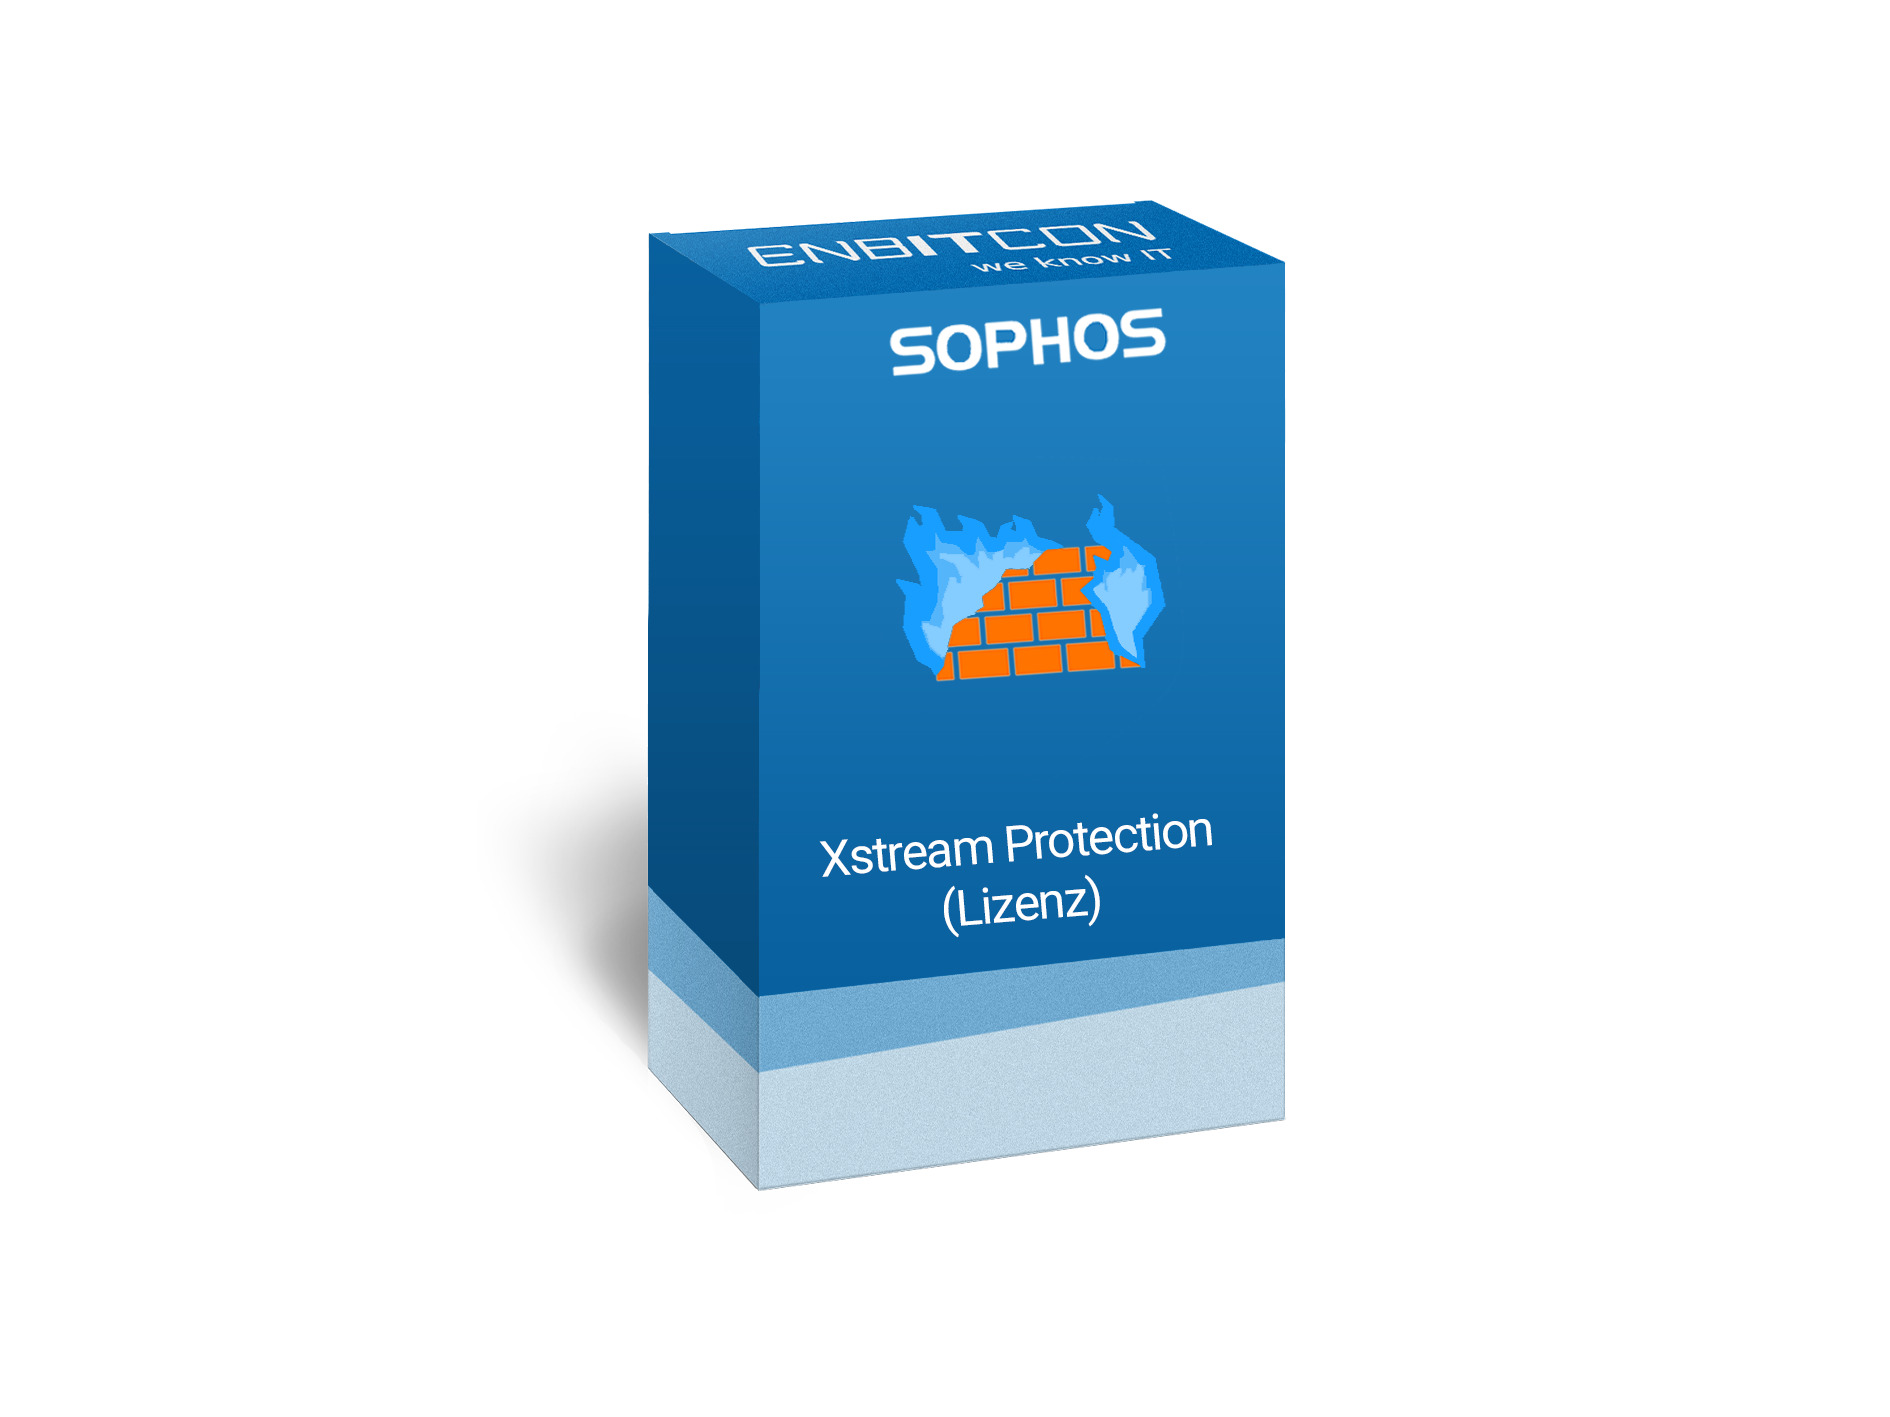 Sophos Xstream Protection Lizenz Vorschaubild bestehend aus dem Sophos logo und einem blauen Schild, indem sich eine Mauer mit blauen Flammen und ein Plus befinden